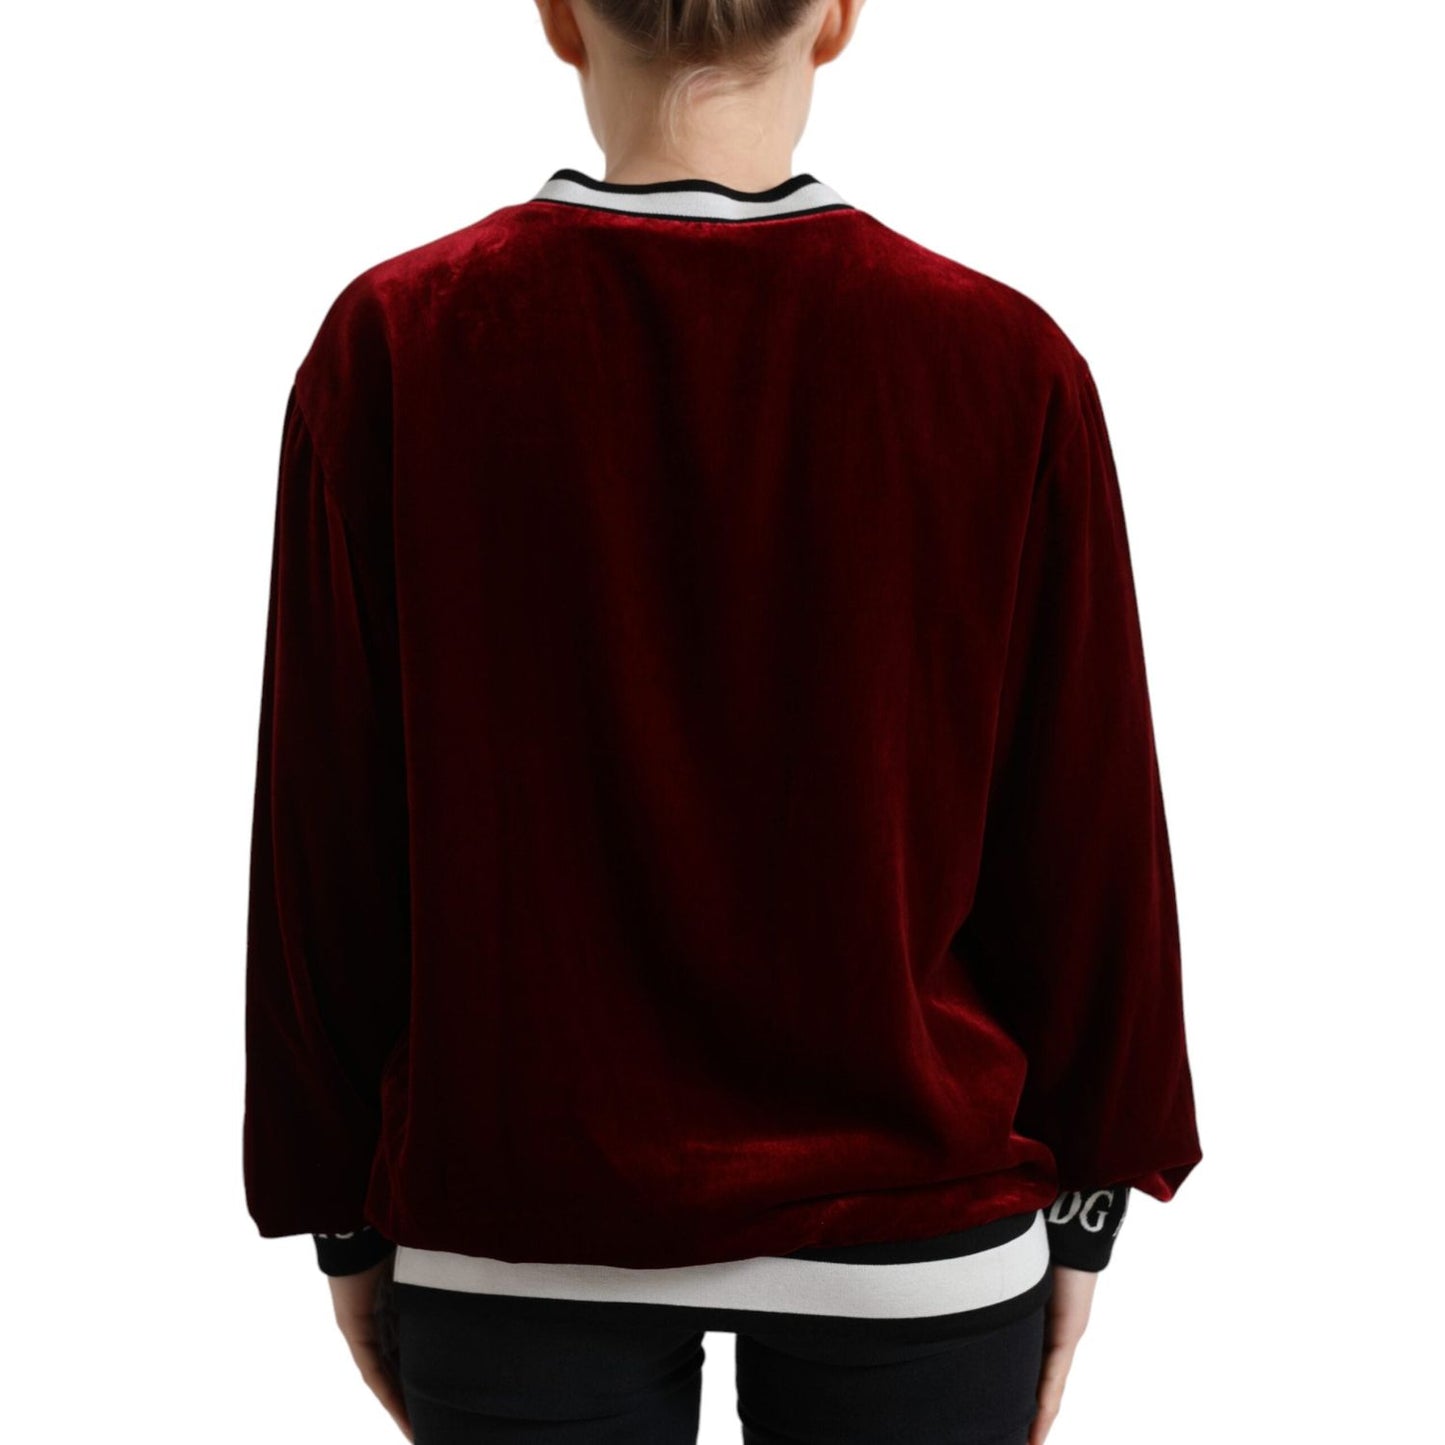 Dolce & Gabbana Elegant Bordeaux Silk-Blend Sweater bordeaux-velvet-crew-neck-pullover-sweater 465A3129-BG-AND-EBAY-scaled-7f9f7c70-db6.jpg